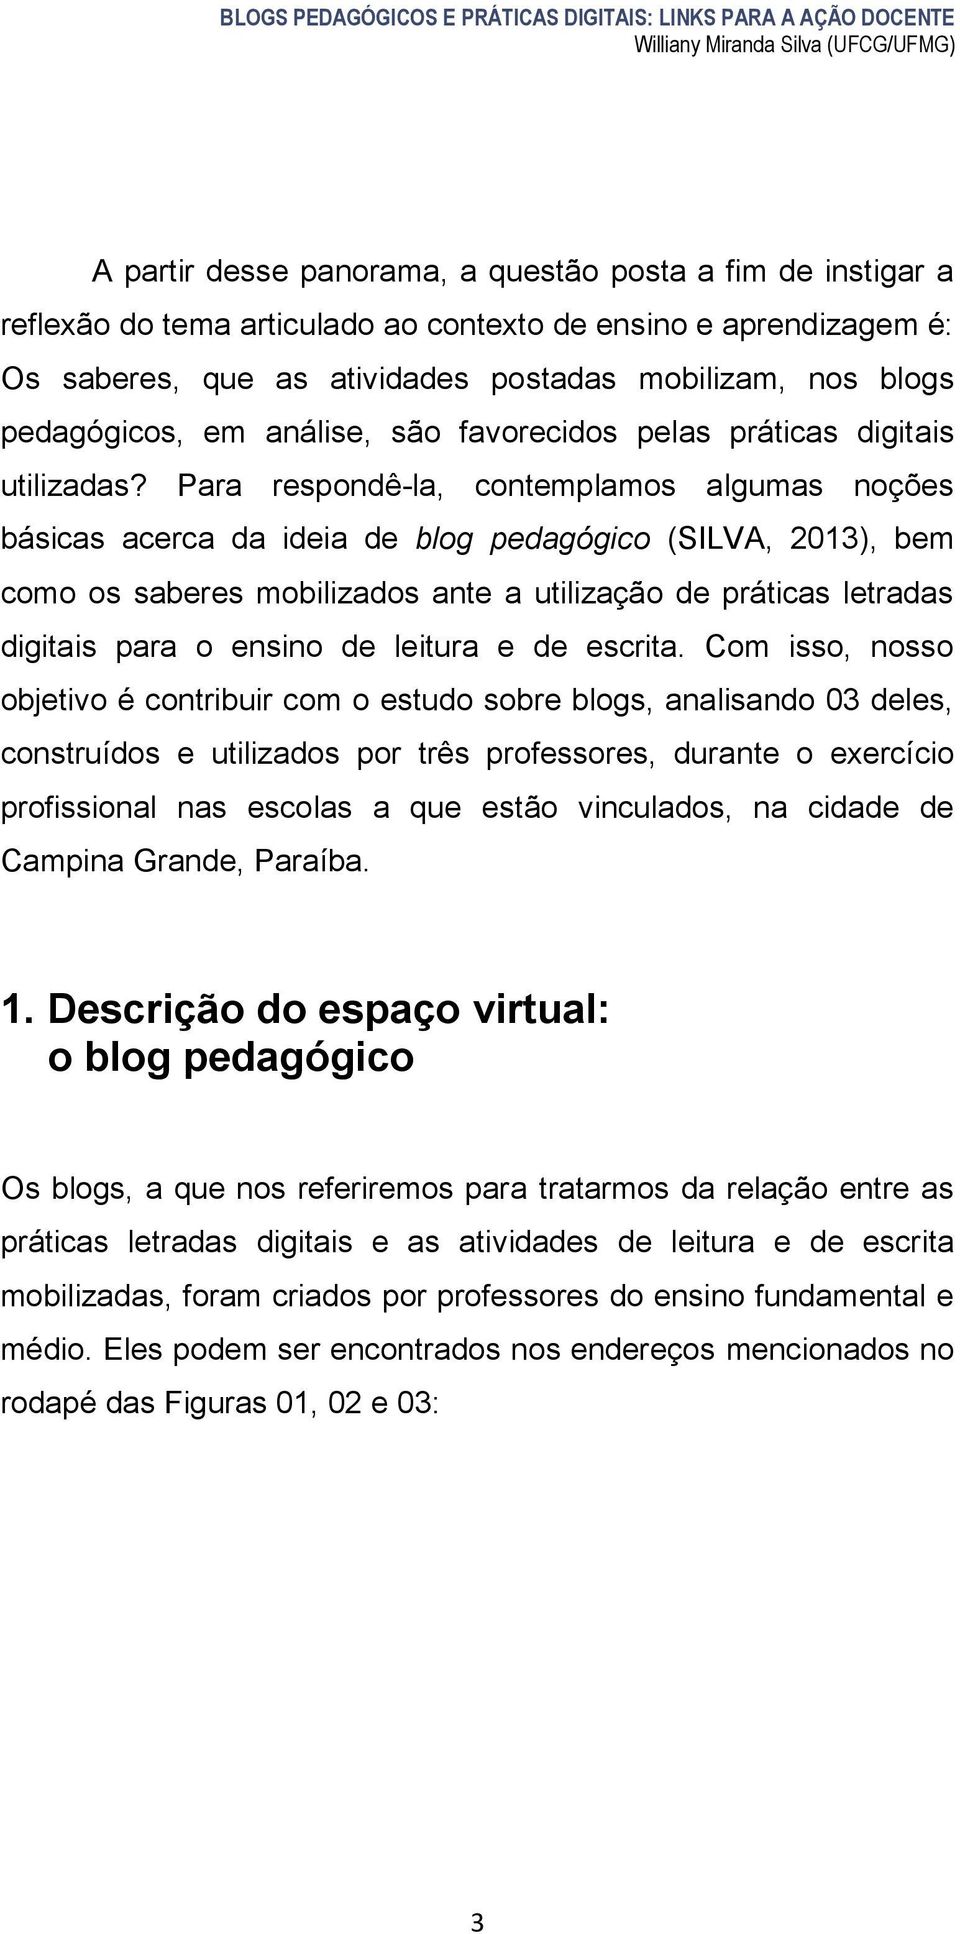 Para respondê-la, contemplamos algumas noções básicas acerca da ideia de blog pedagógico (SILVA, 2013), bem como os saberes mobilizados ante a utilização de práticas letradas digitais para o ensino